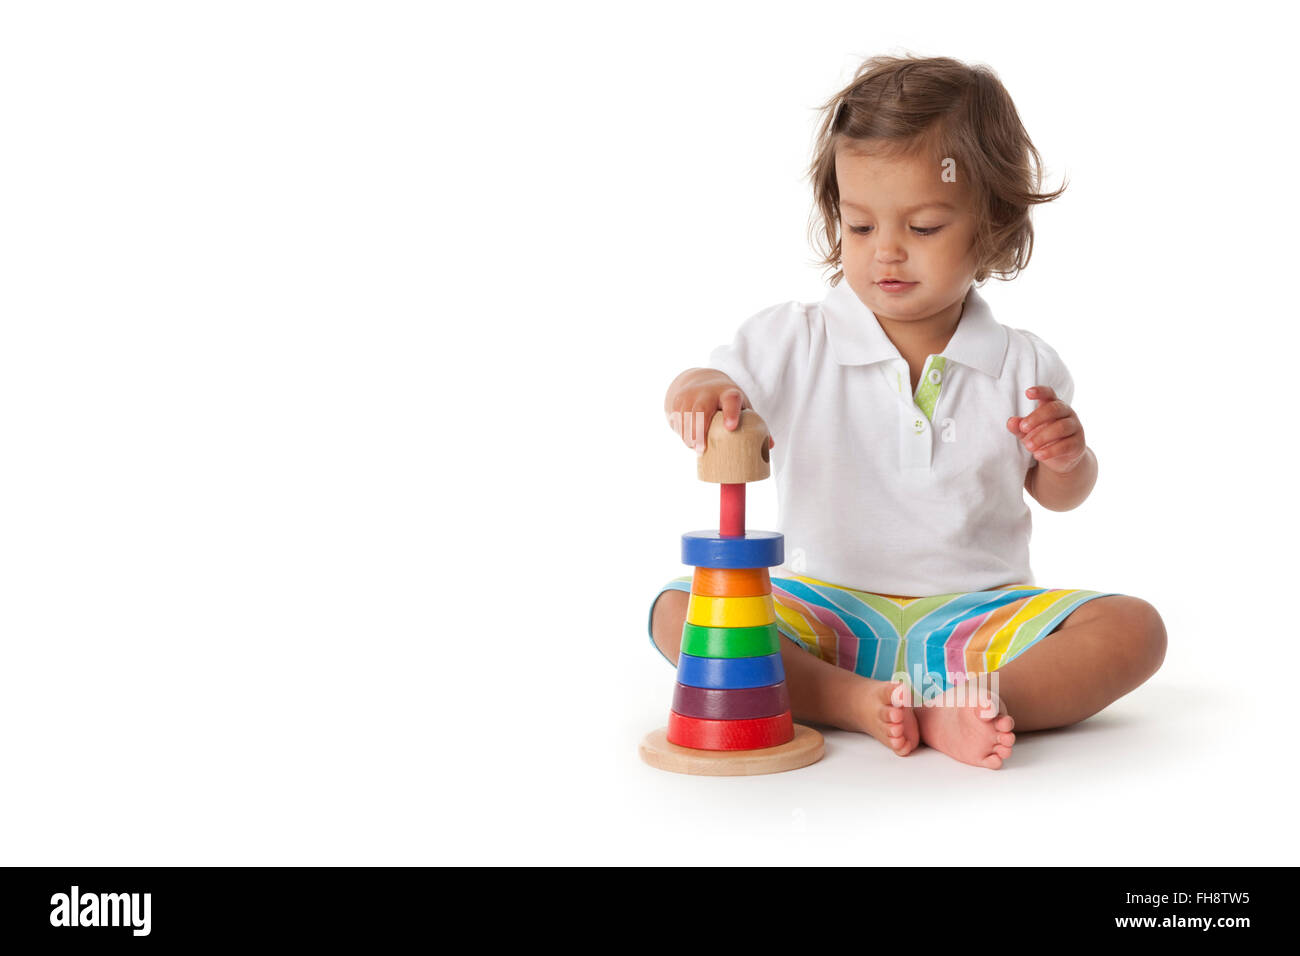 Bébé fille jouant avec des briques de couleur sur fond blanc Banque D'Images